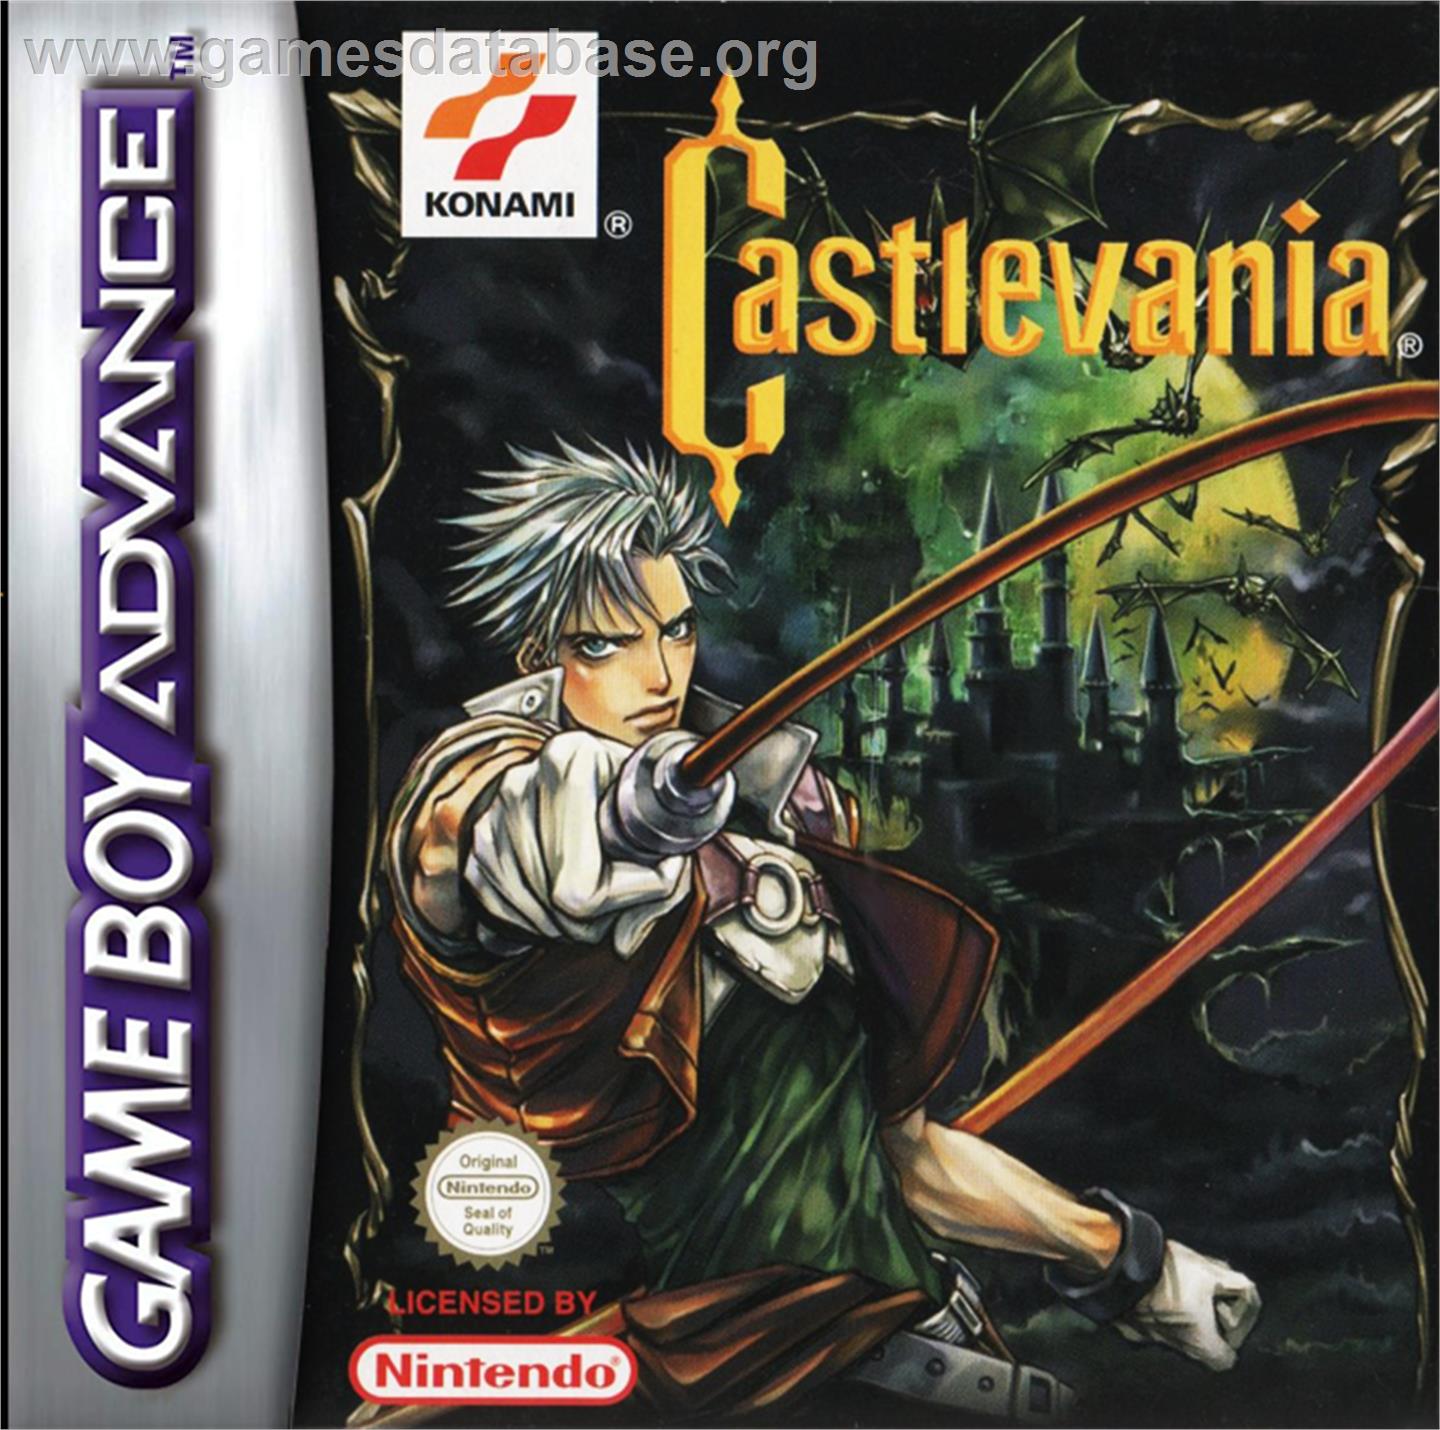 Castlevania: Circle of the Moon - Nintendo Game Boy Advance - Artwork - Box